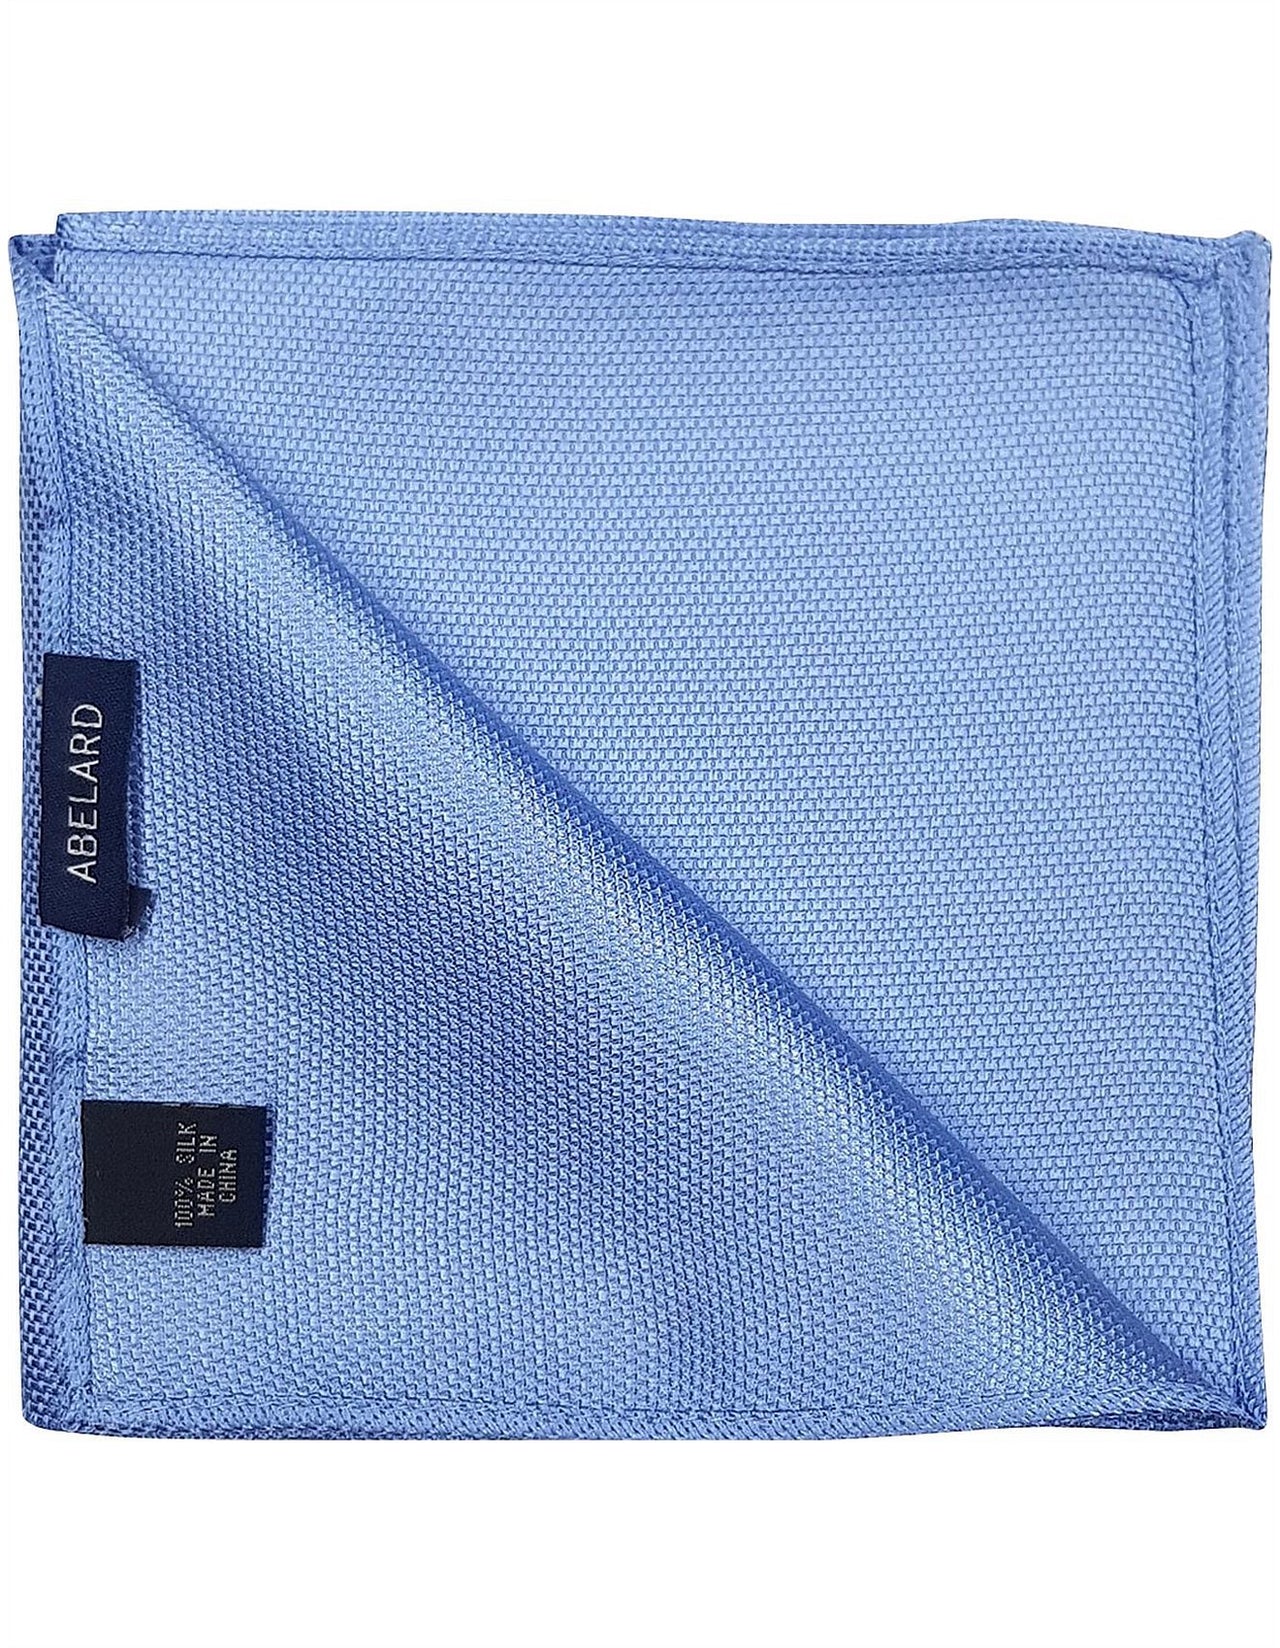 ABELARD Pocket Square textured BLUE